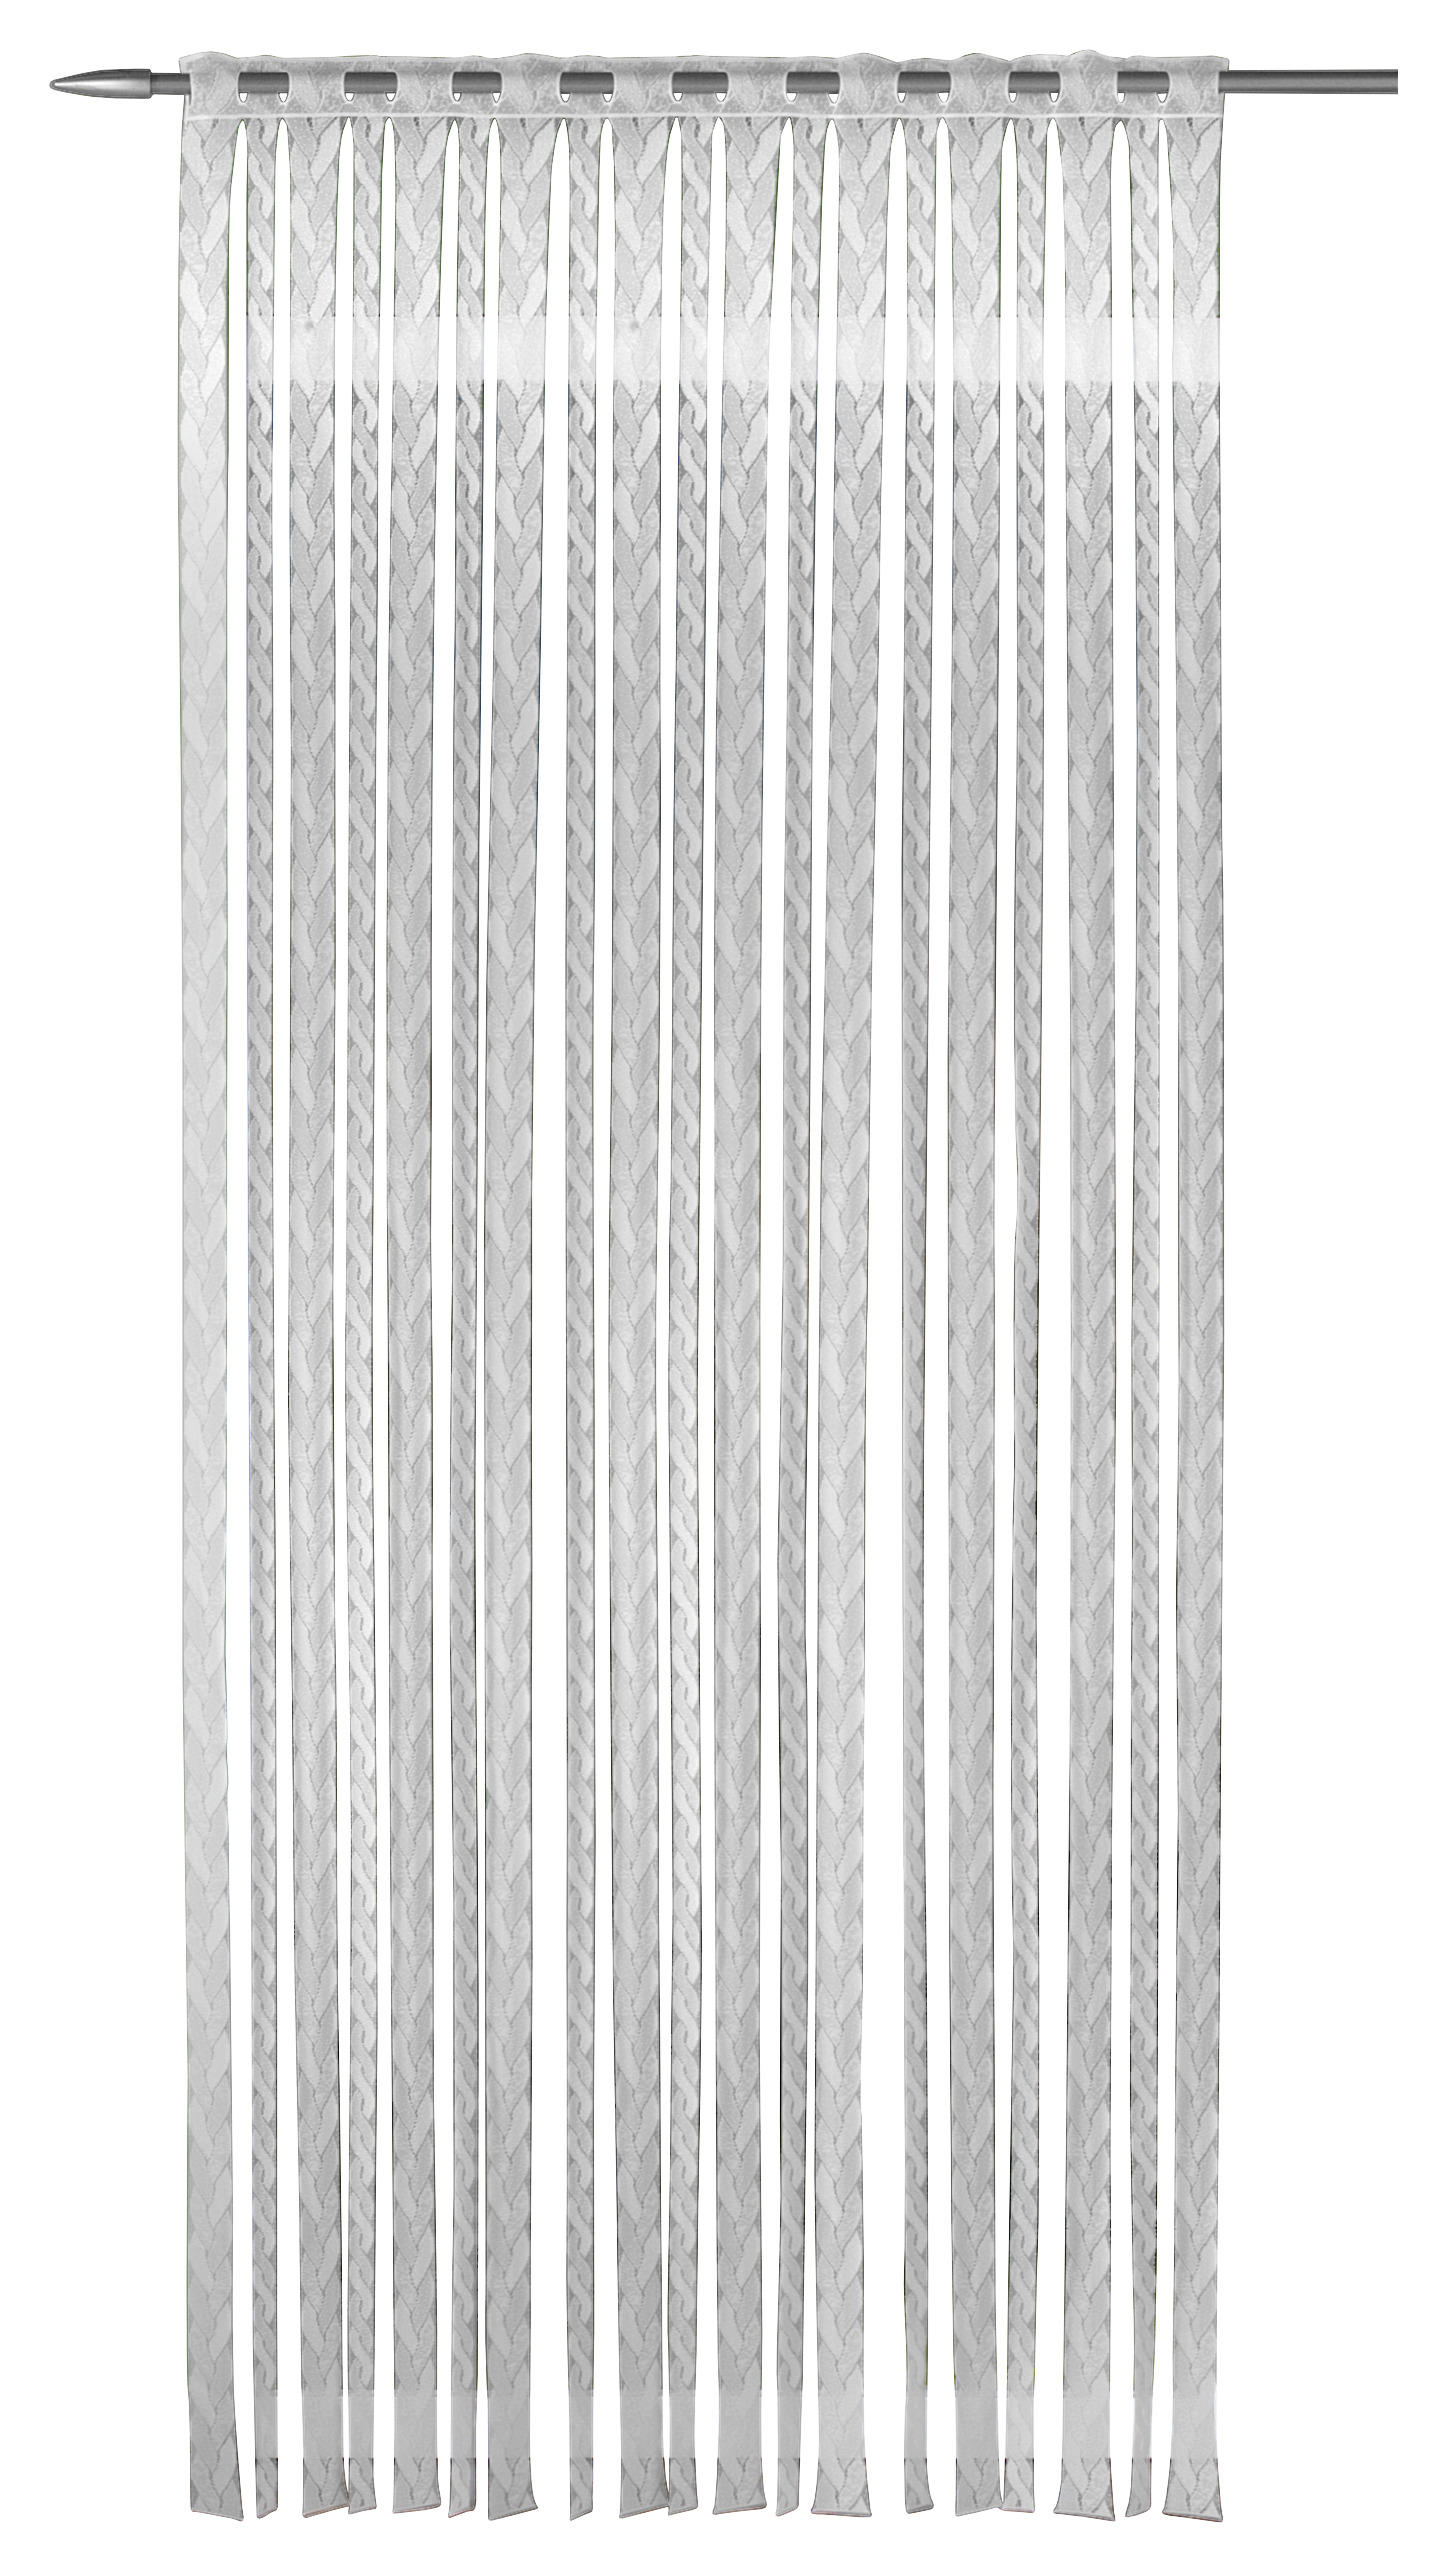 Fadenvorhang Lotti Weiß B/l: Ca. 90x245 Cm Lotti - weiß (90,00/245,00cm)